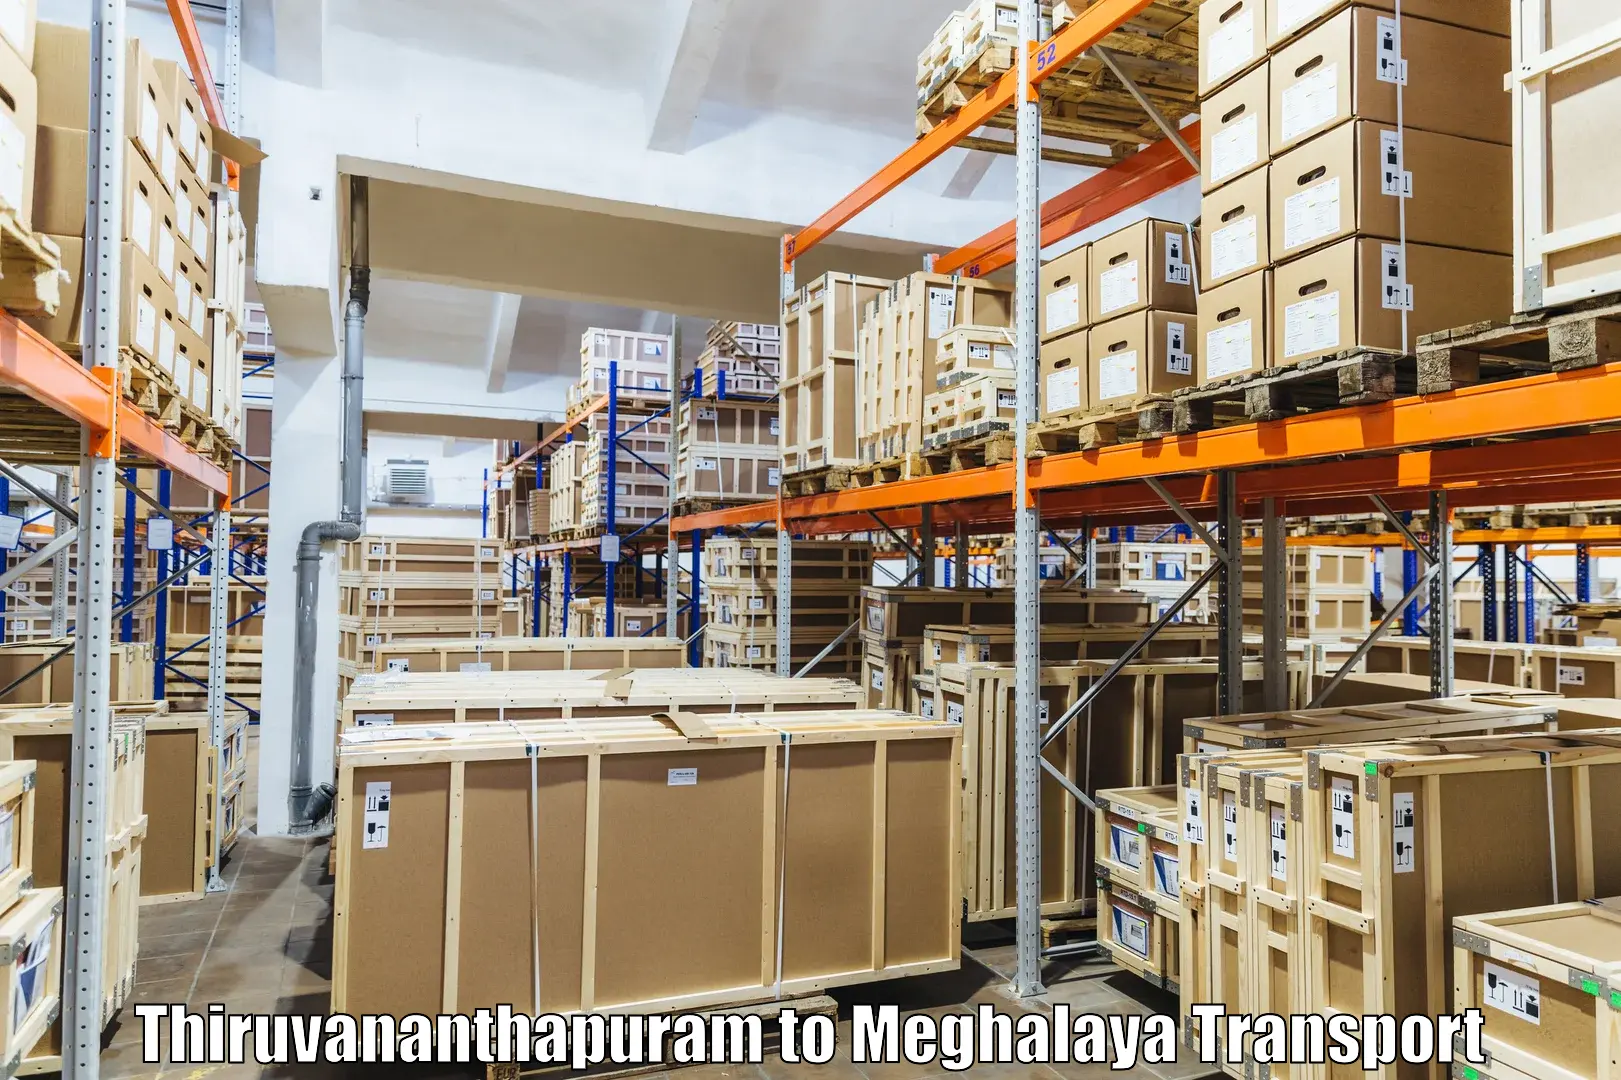 Vehicle transport services Thiruvananthapuram to Jowai